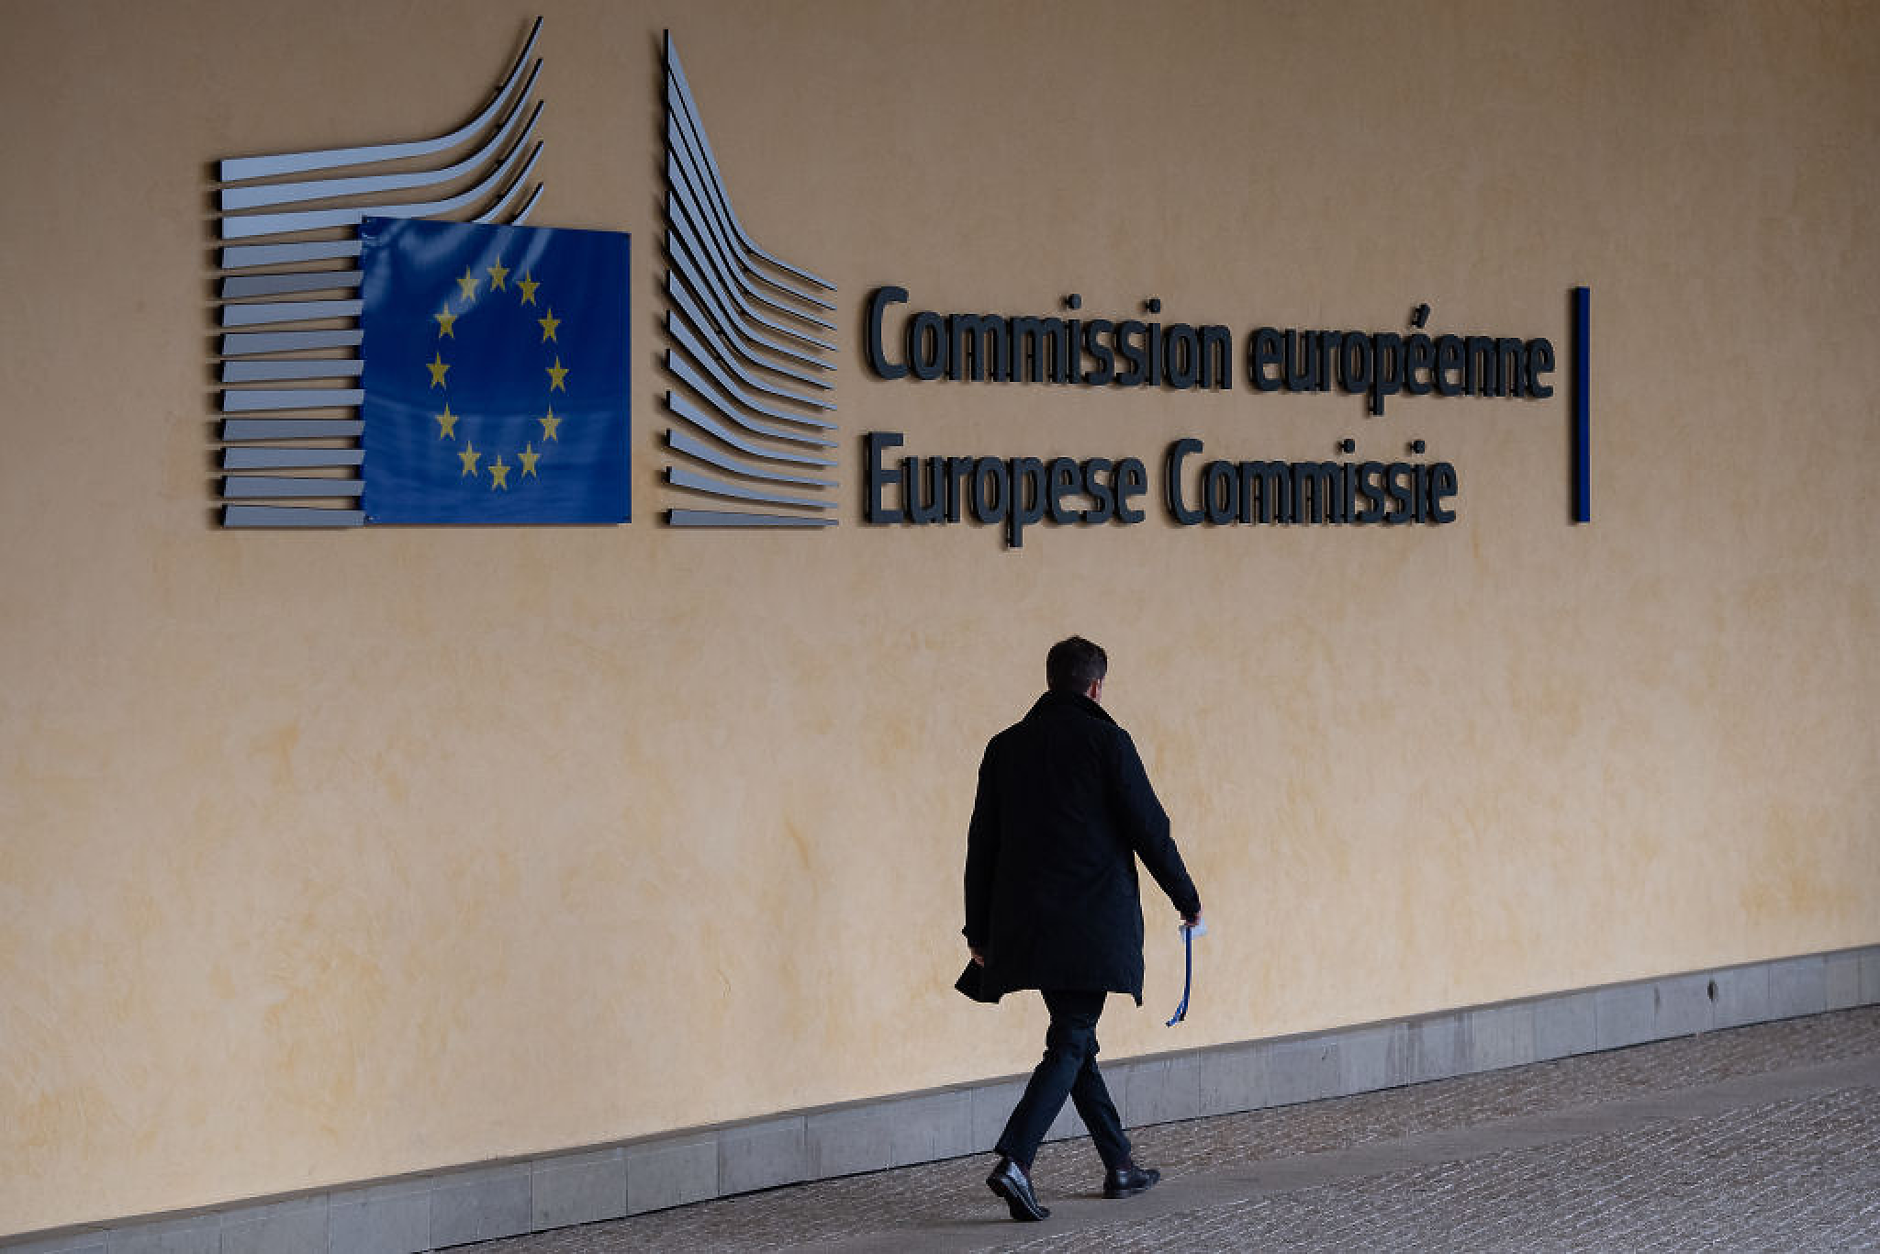 Еврокомисията определи Booking като пазач на информационния вход. Започва разследване за X